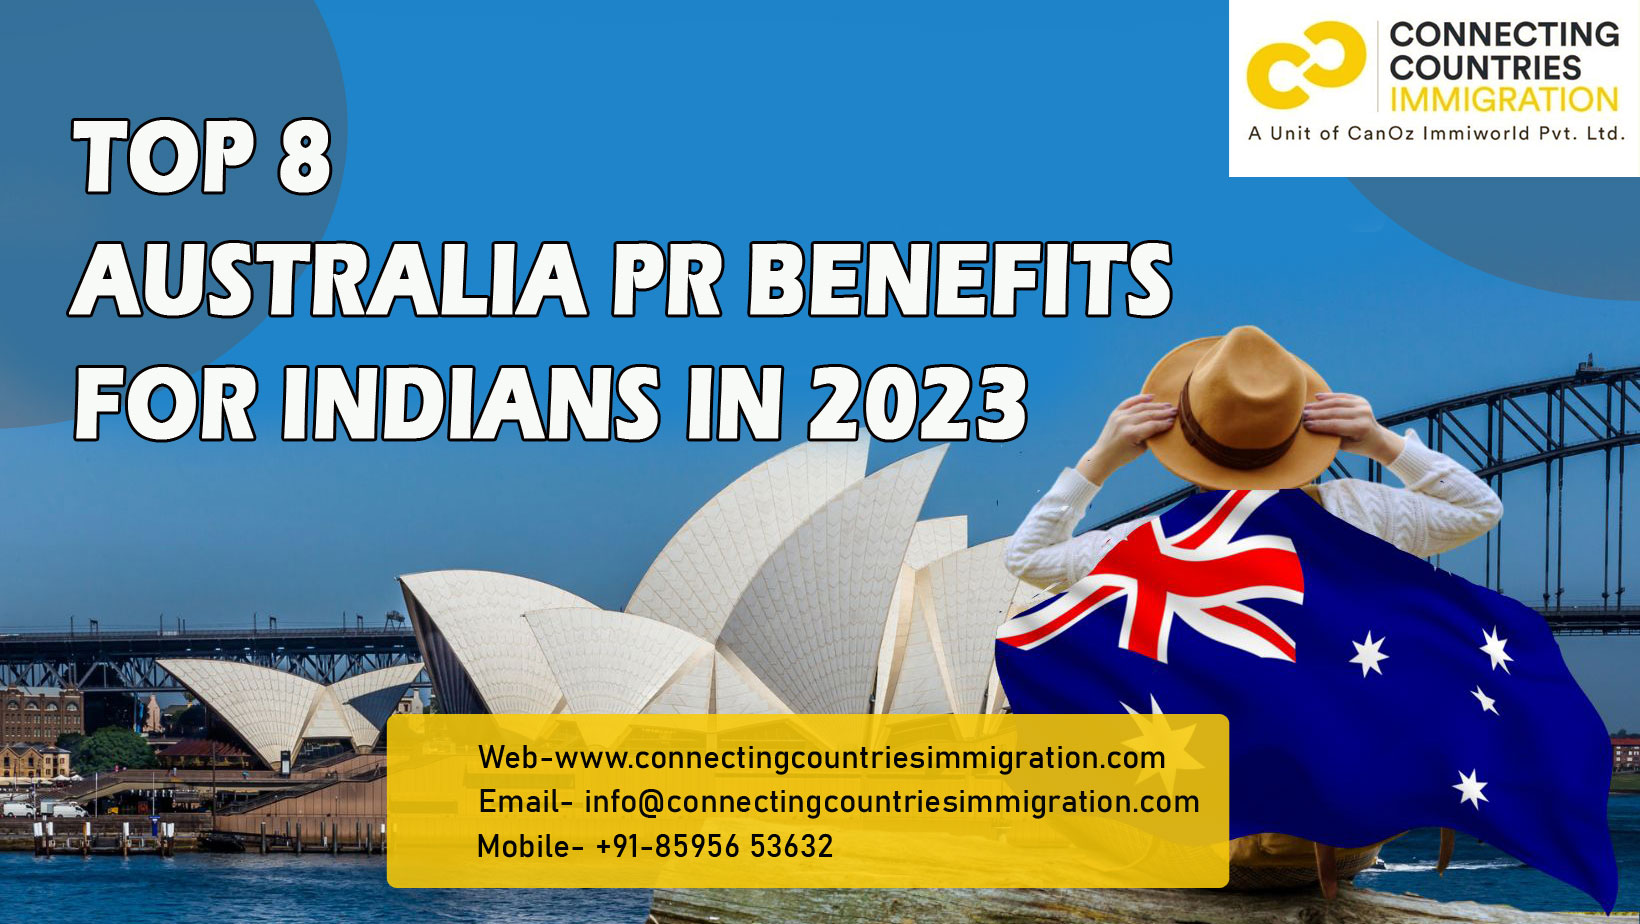 Top 8 Australia PR Benefits for Indians in 2023